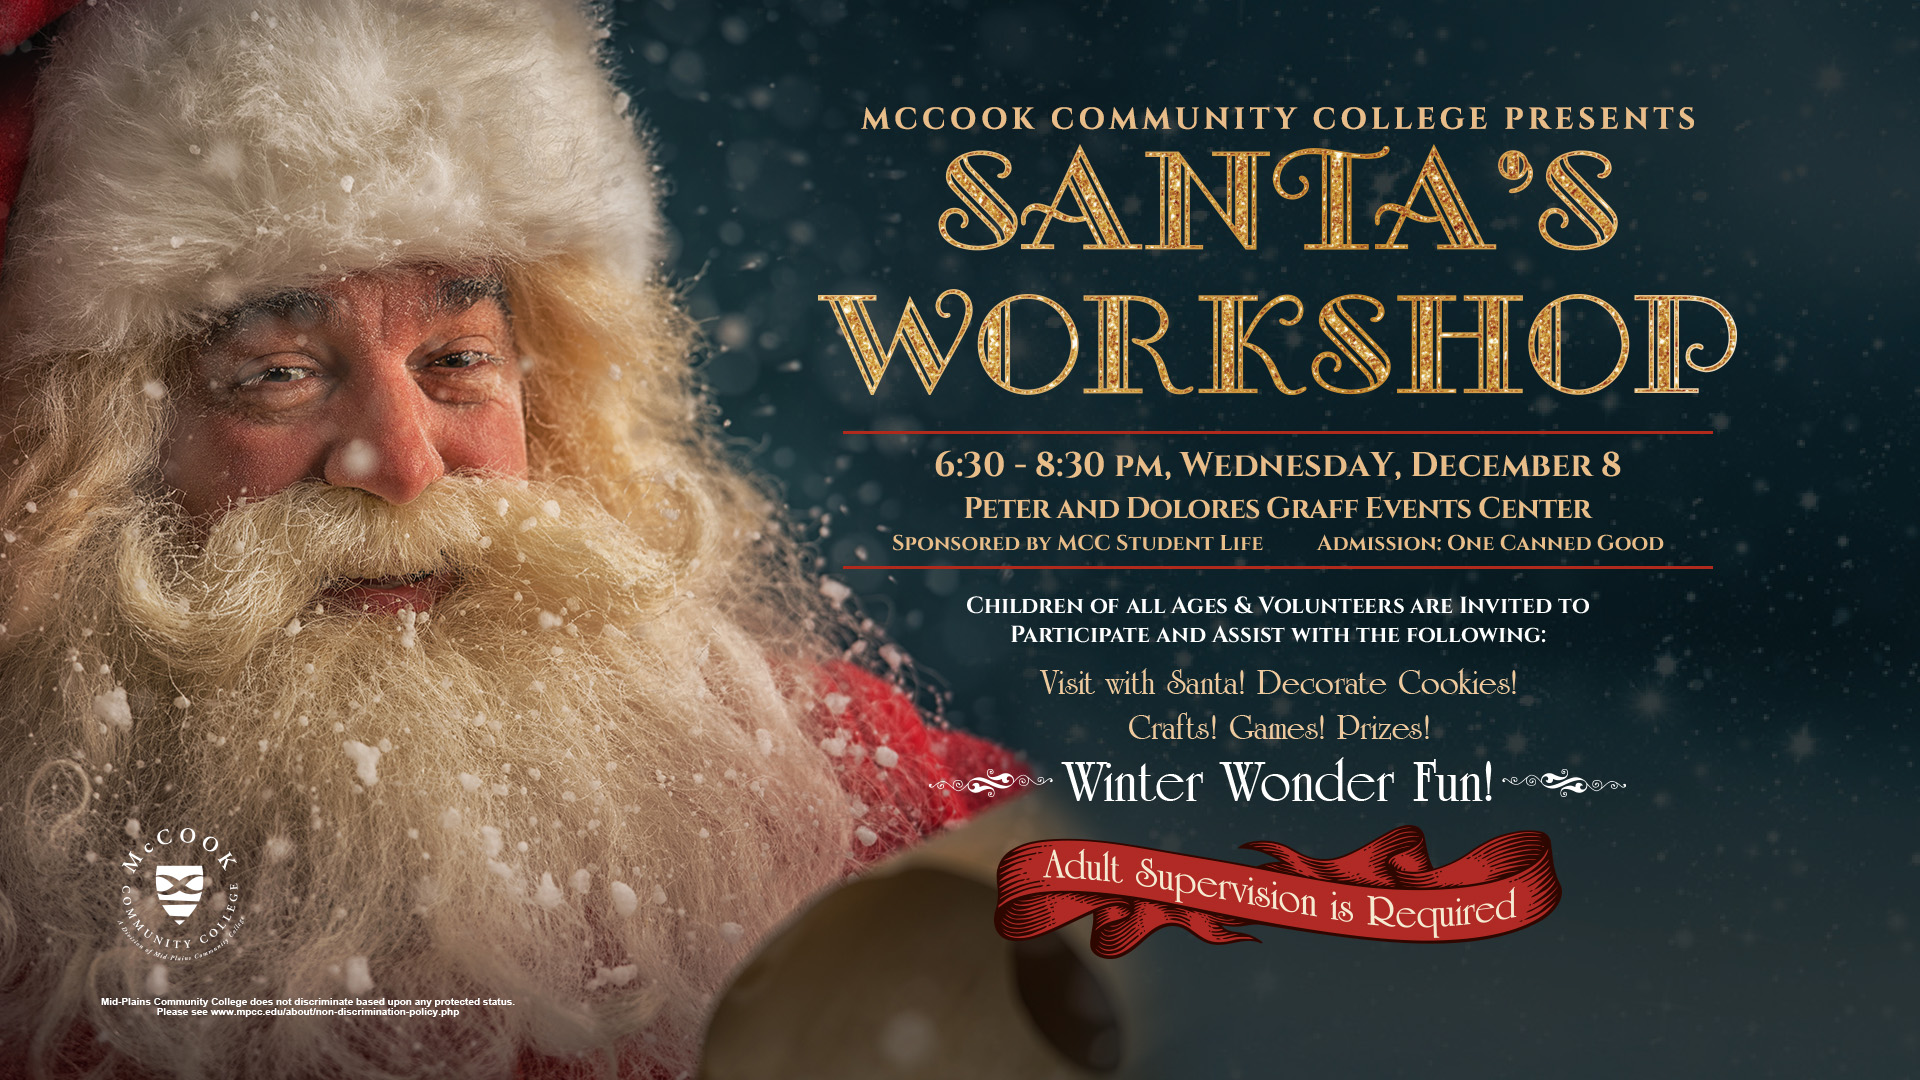 Santa's Workshop at MCC Dec. 8